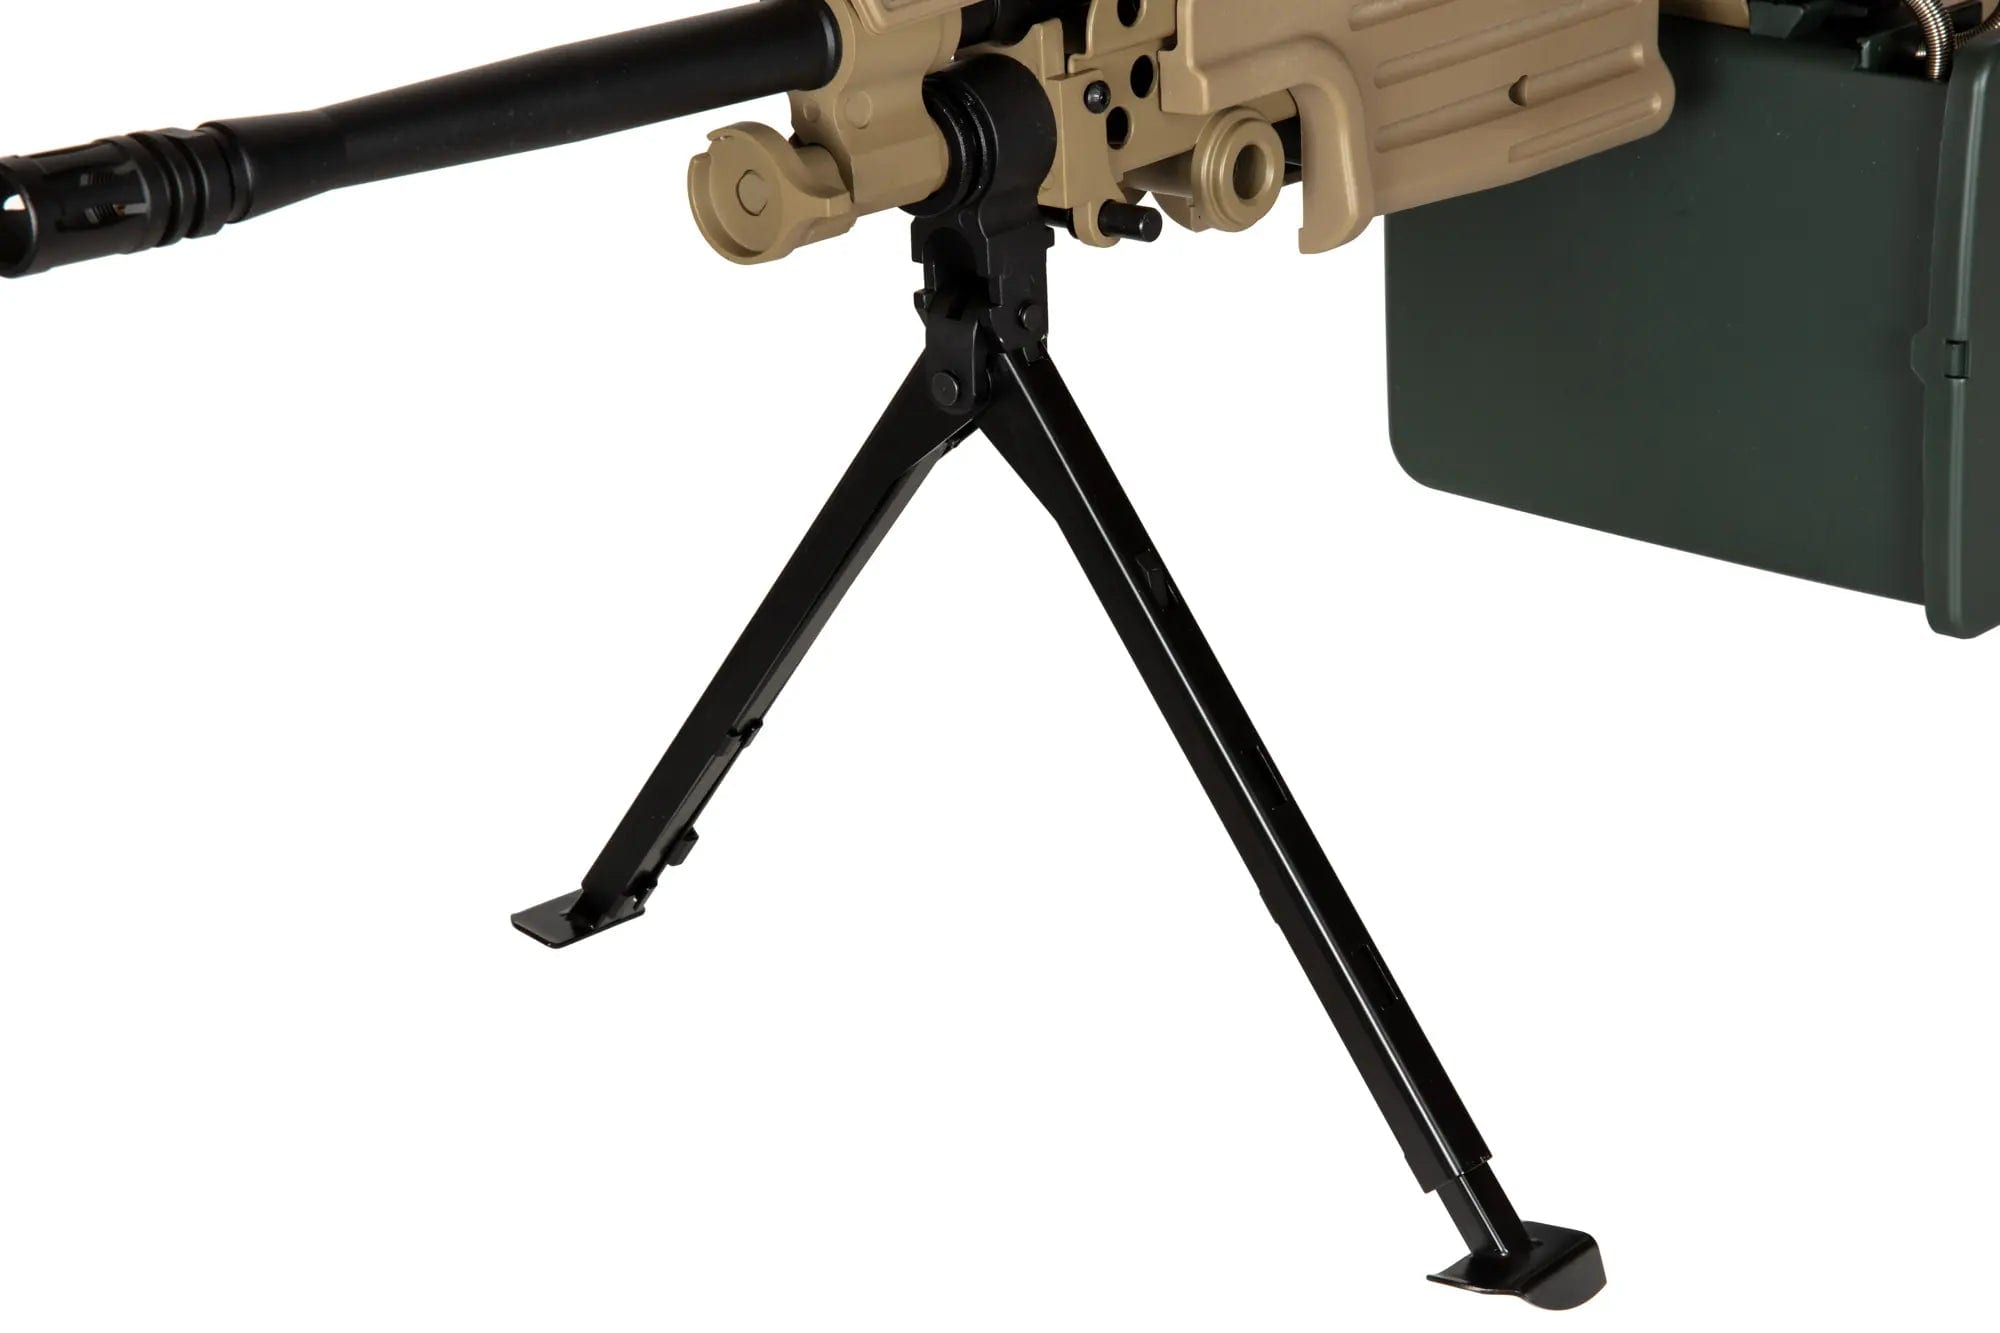 Machine Gun SA-249 MK2 EDGE - Tan